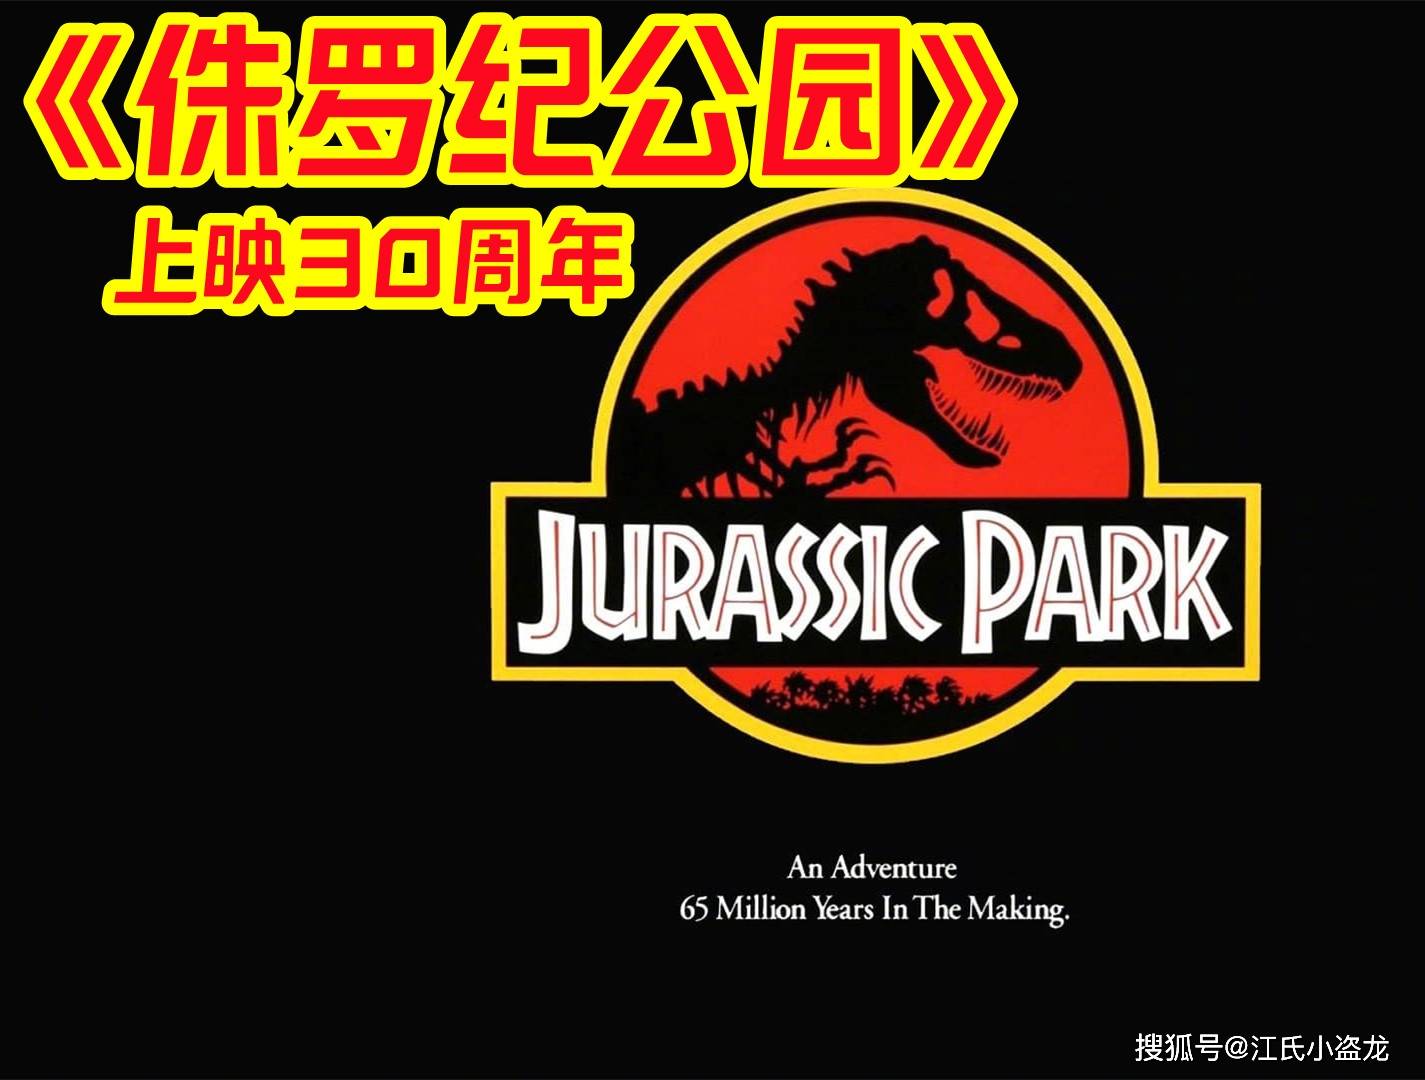 【恐龙电影】《侏罗纪公园》30周年纪念